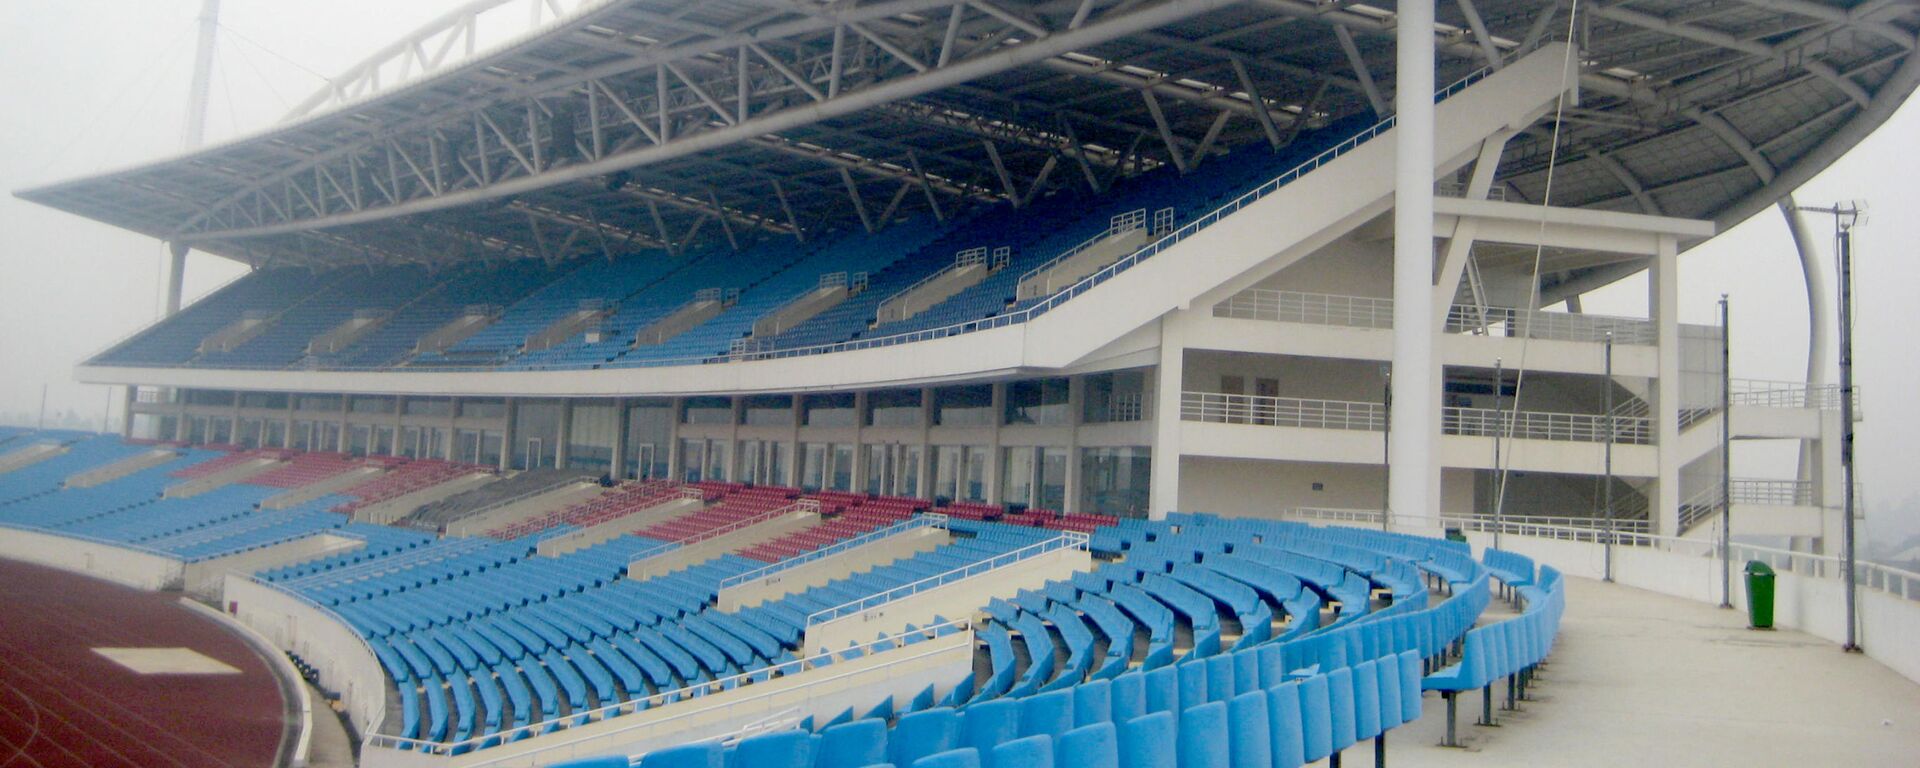 Sân vận động Mỹ Đình - Sputnik Việt Nam, 1920, 09.11.2021